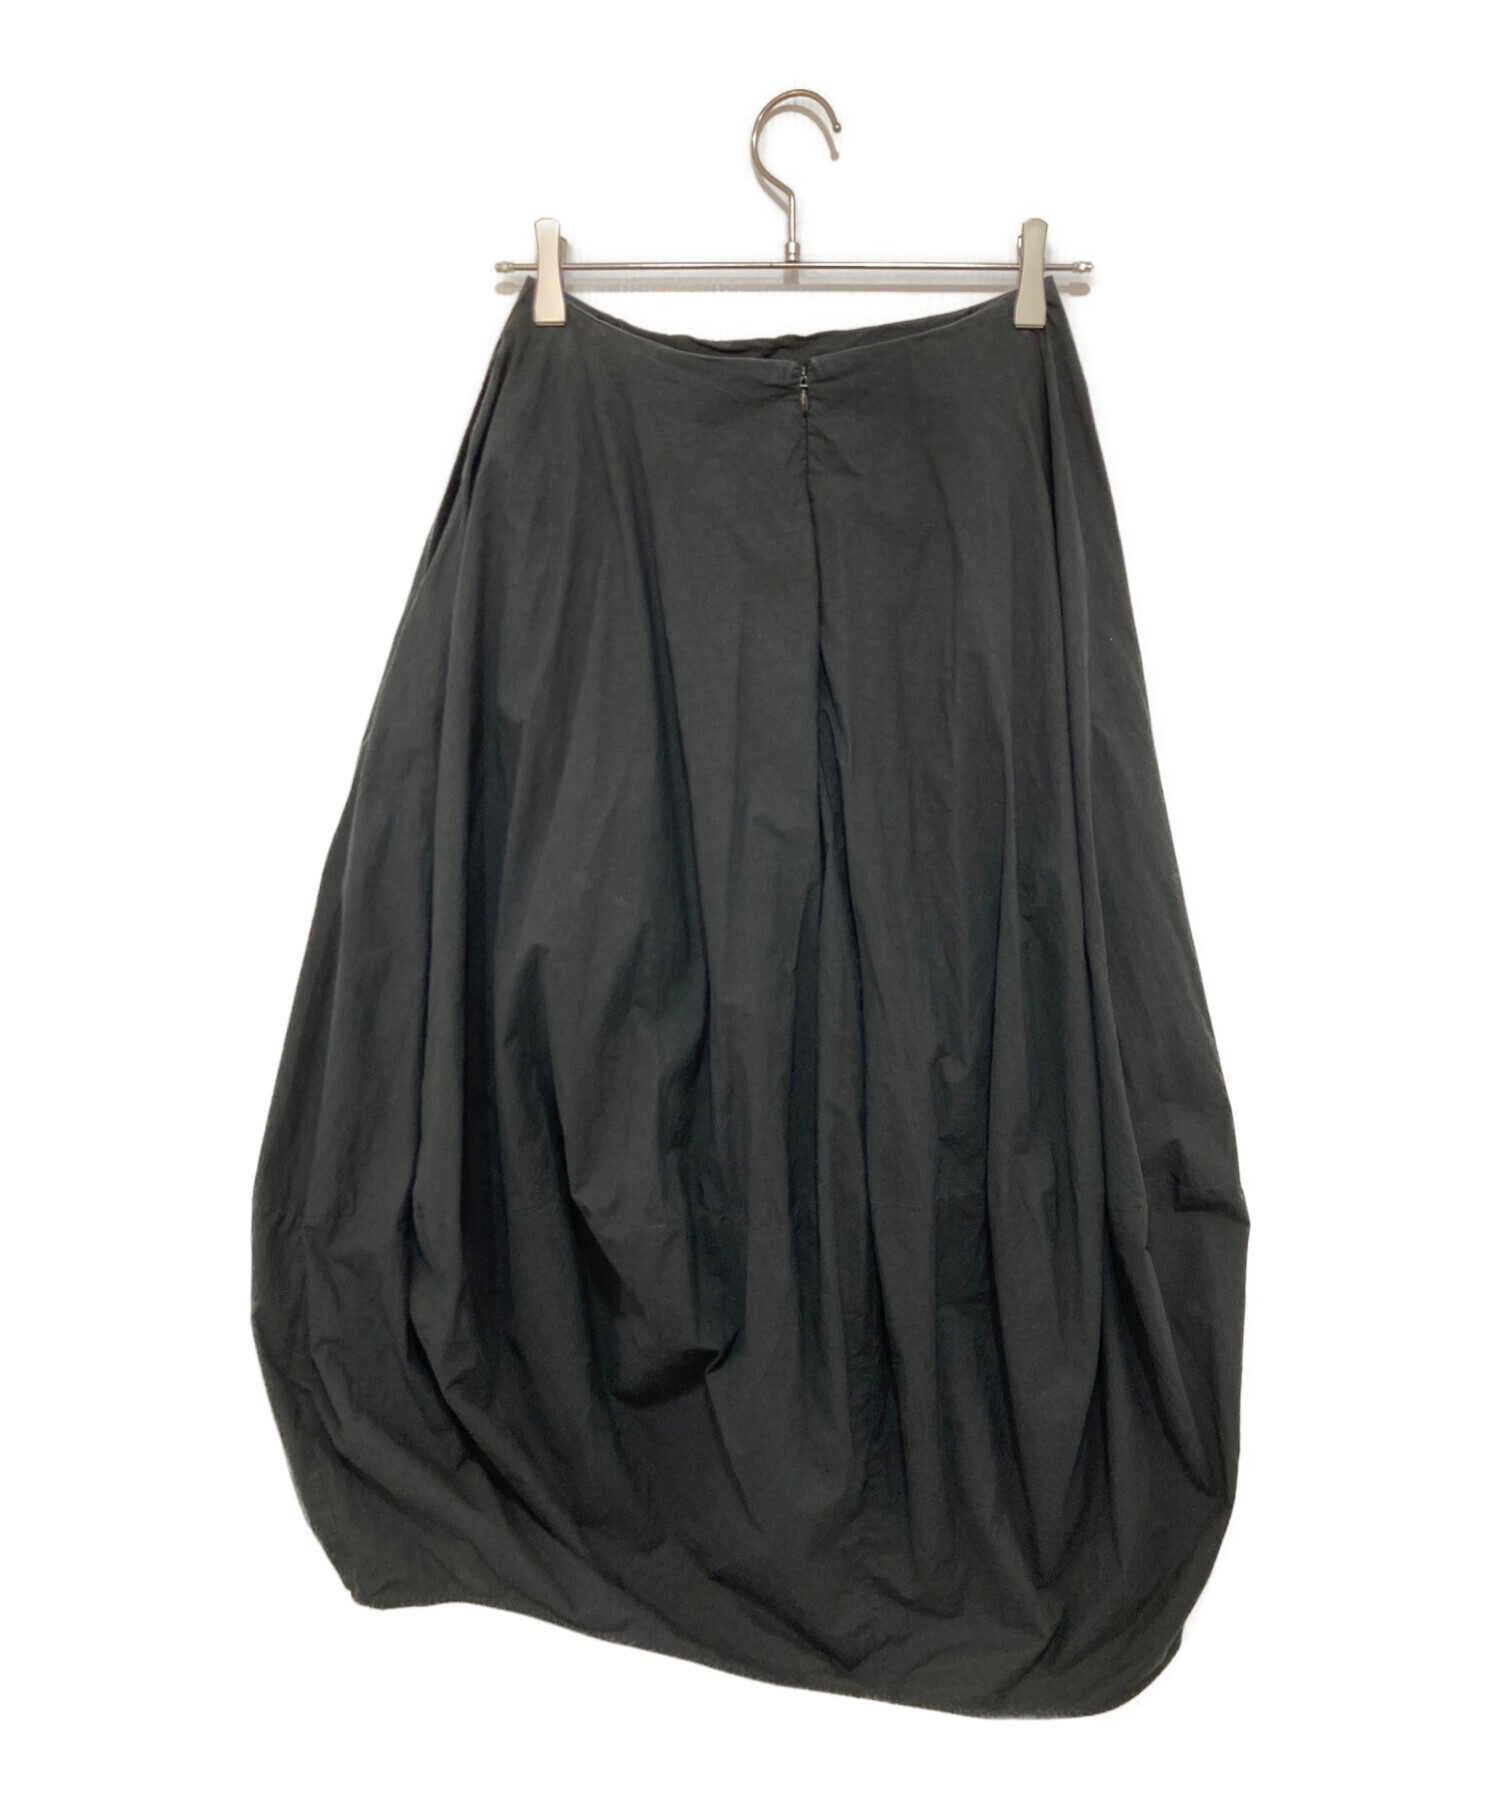 nagonstans (ナゴンスタンス) Washedタイプライター バルーンスカート ブラック サイズ:36